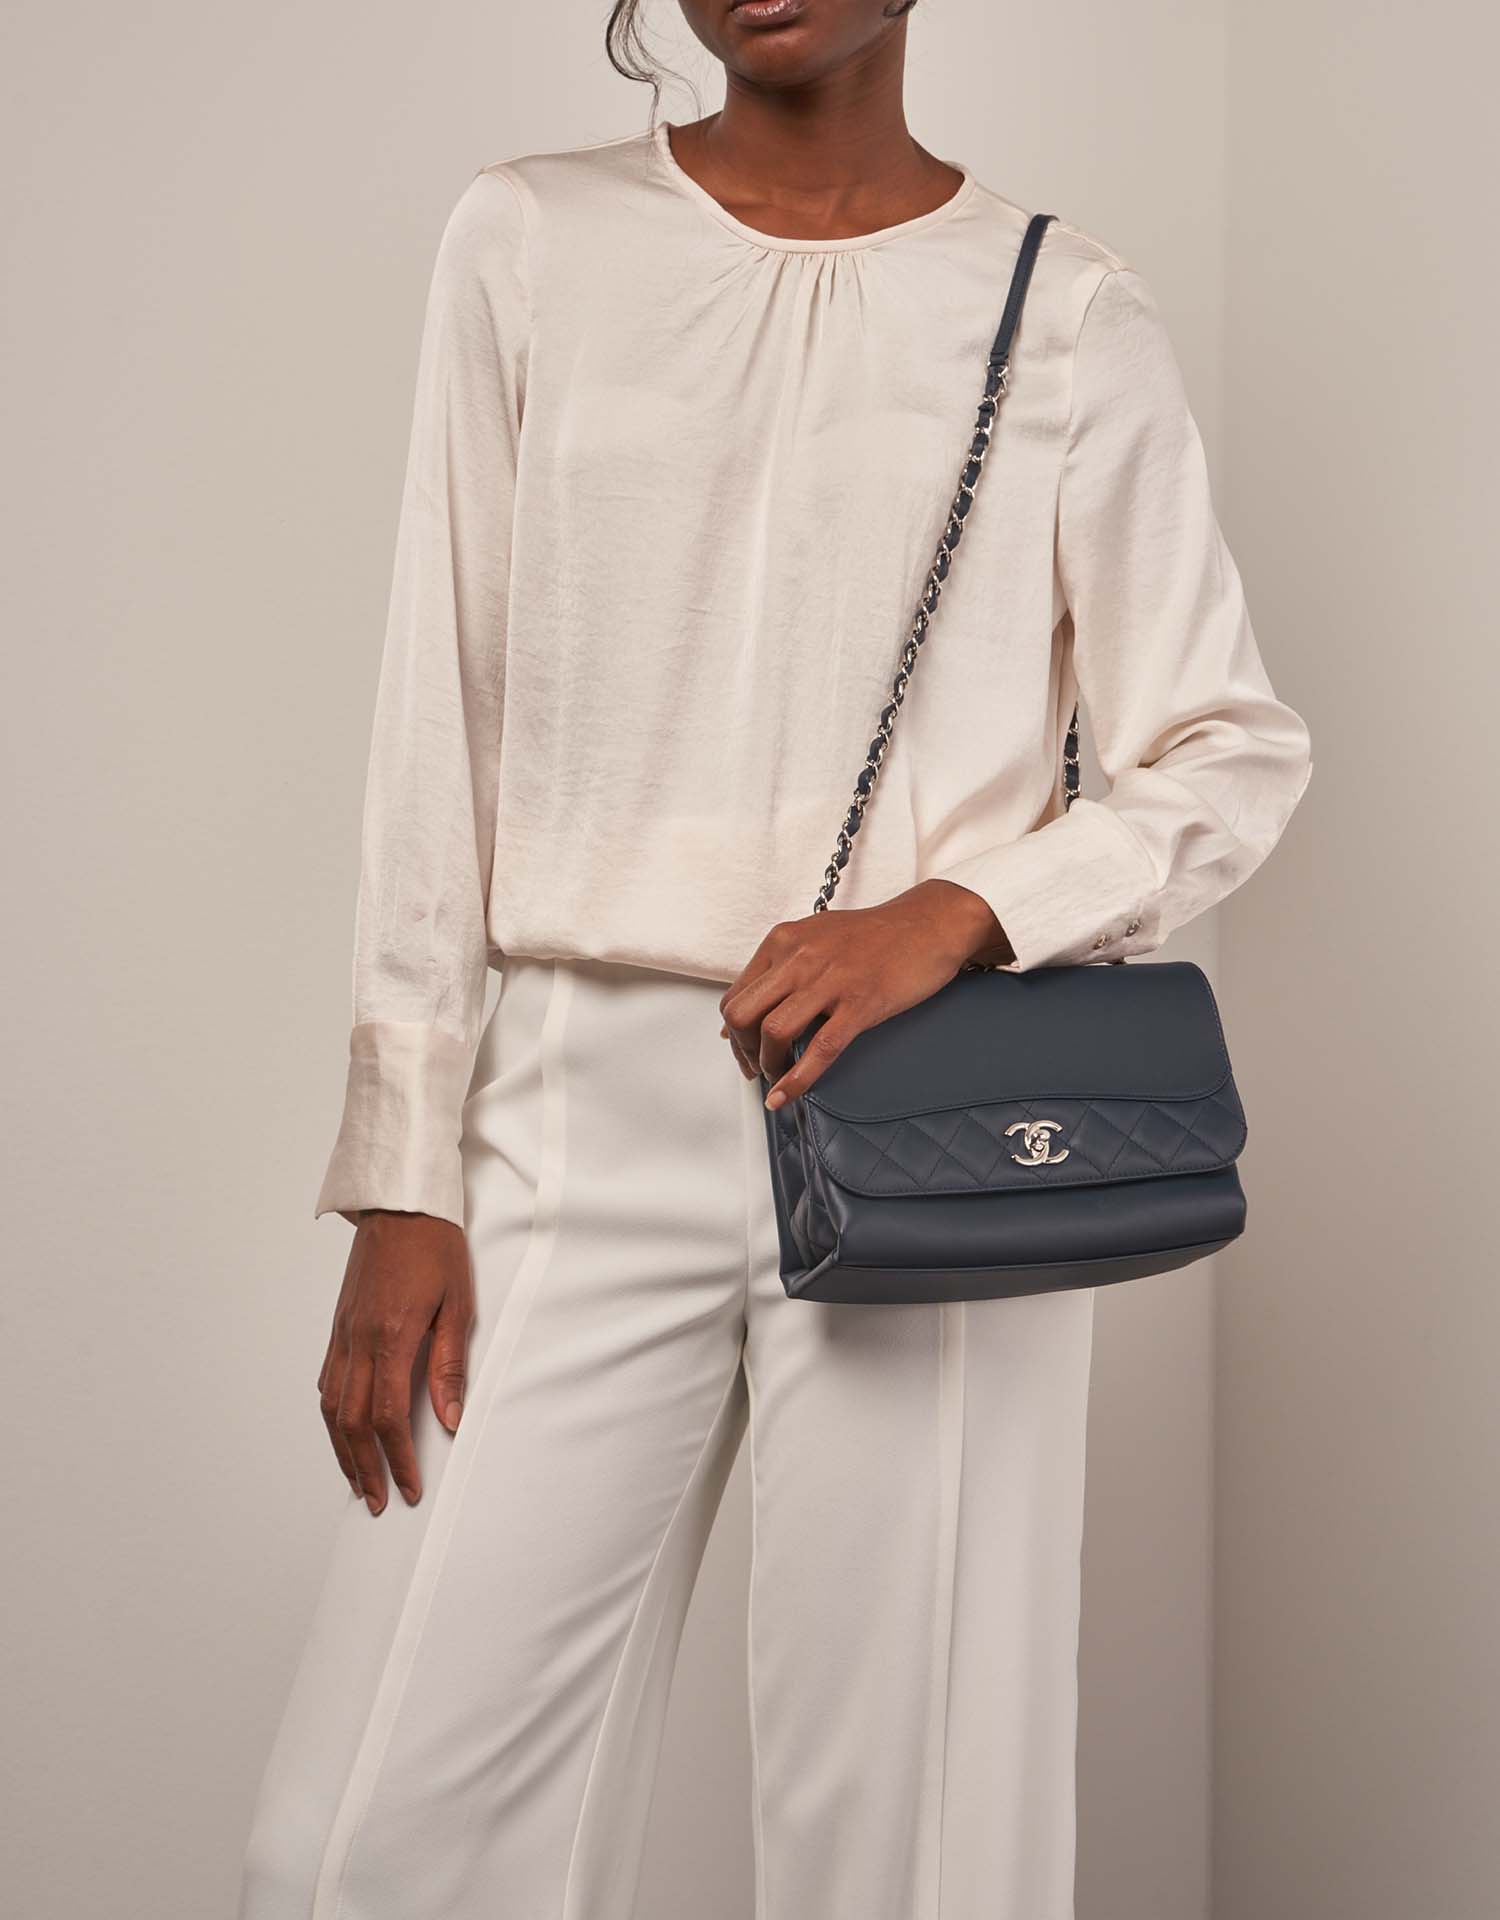 Chanel TimelessTramezzo Medium Navy auf Model | Verkaufen Sie Ihre Designer-Tasche auf Saclab.com